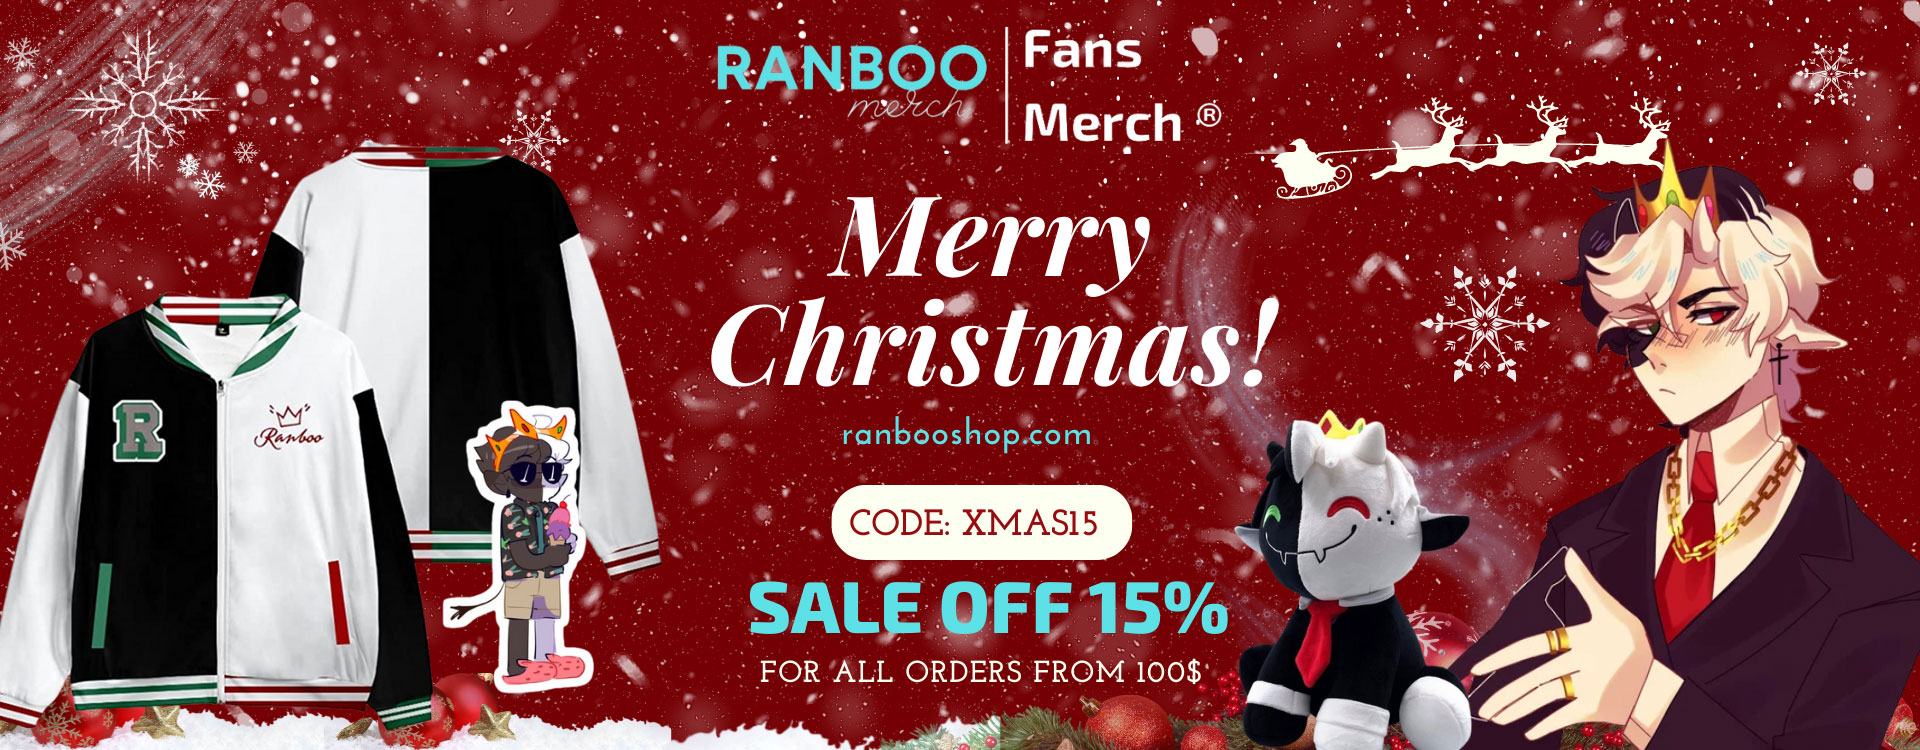 RANBOO SHOP XMAS BANNER - Ranboo Shop